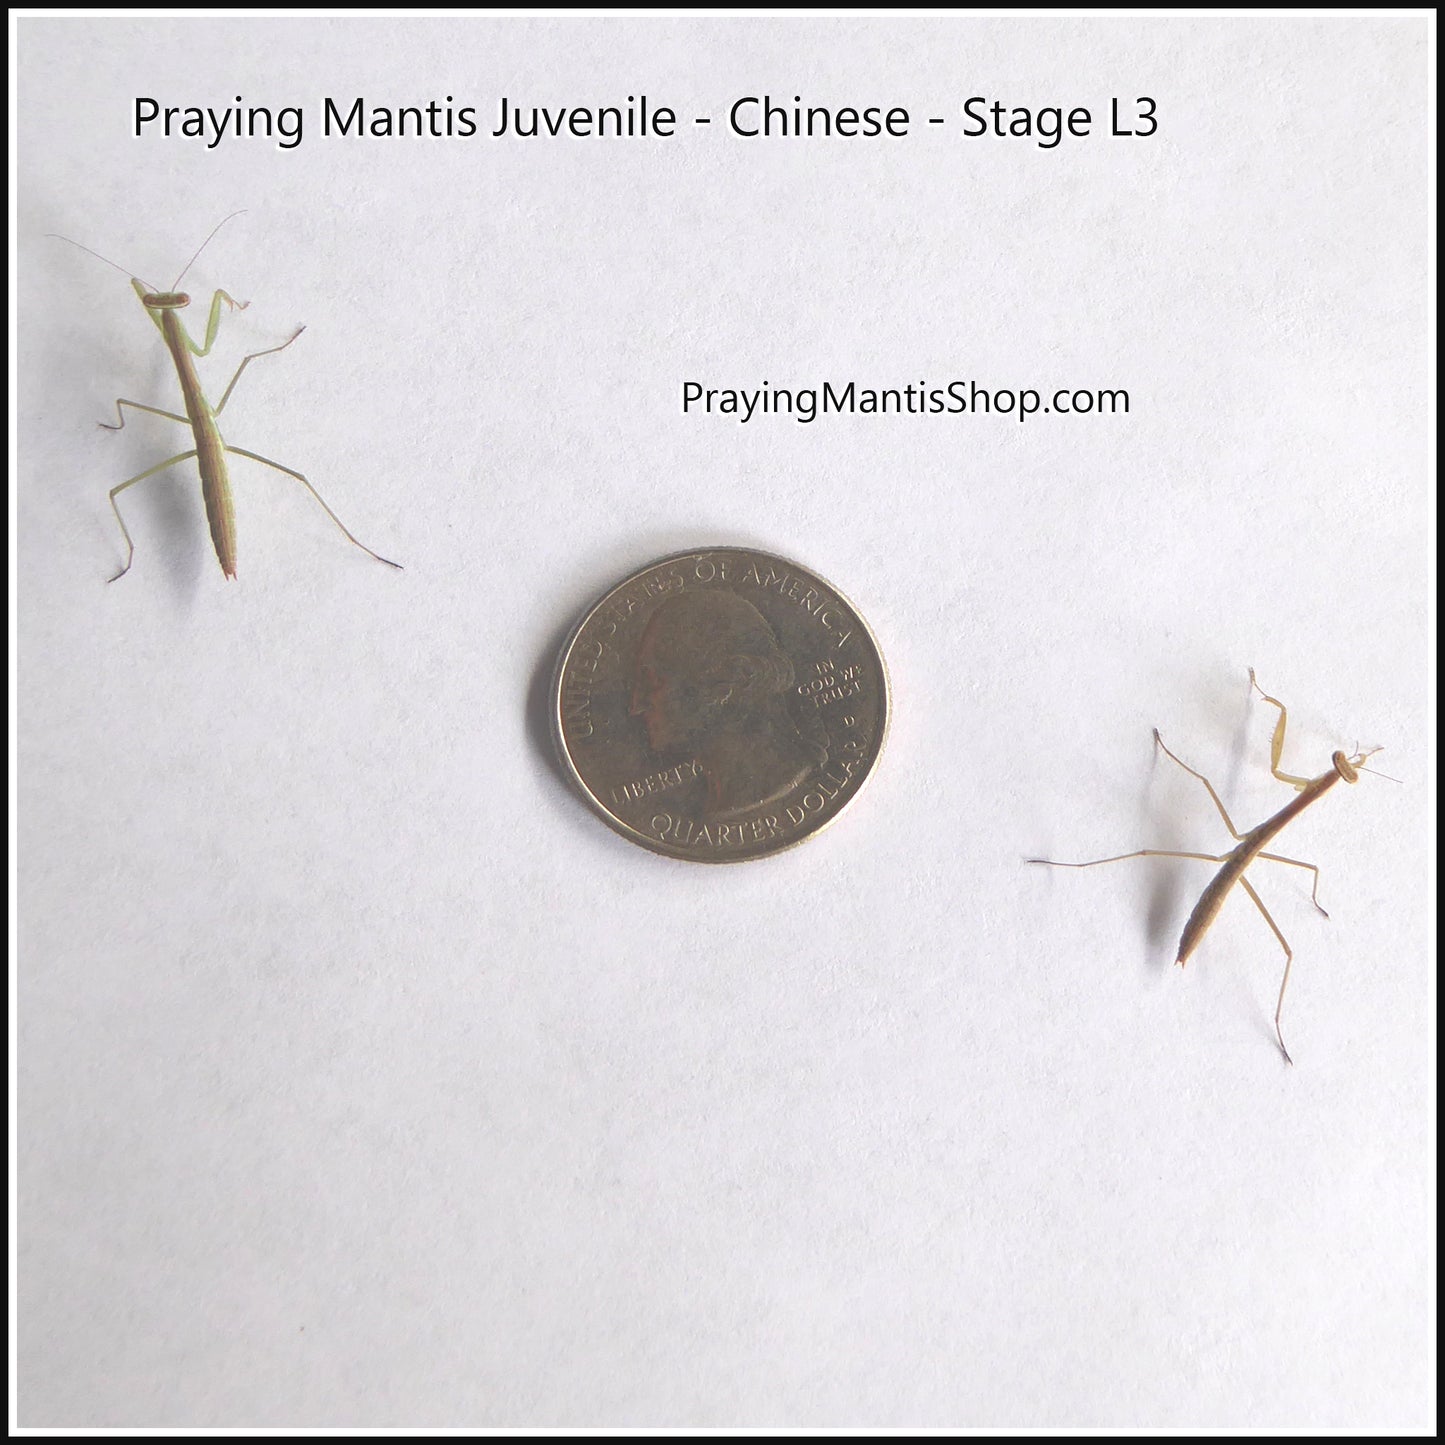 Praying Mantis Living Juvenile